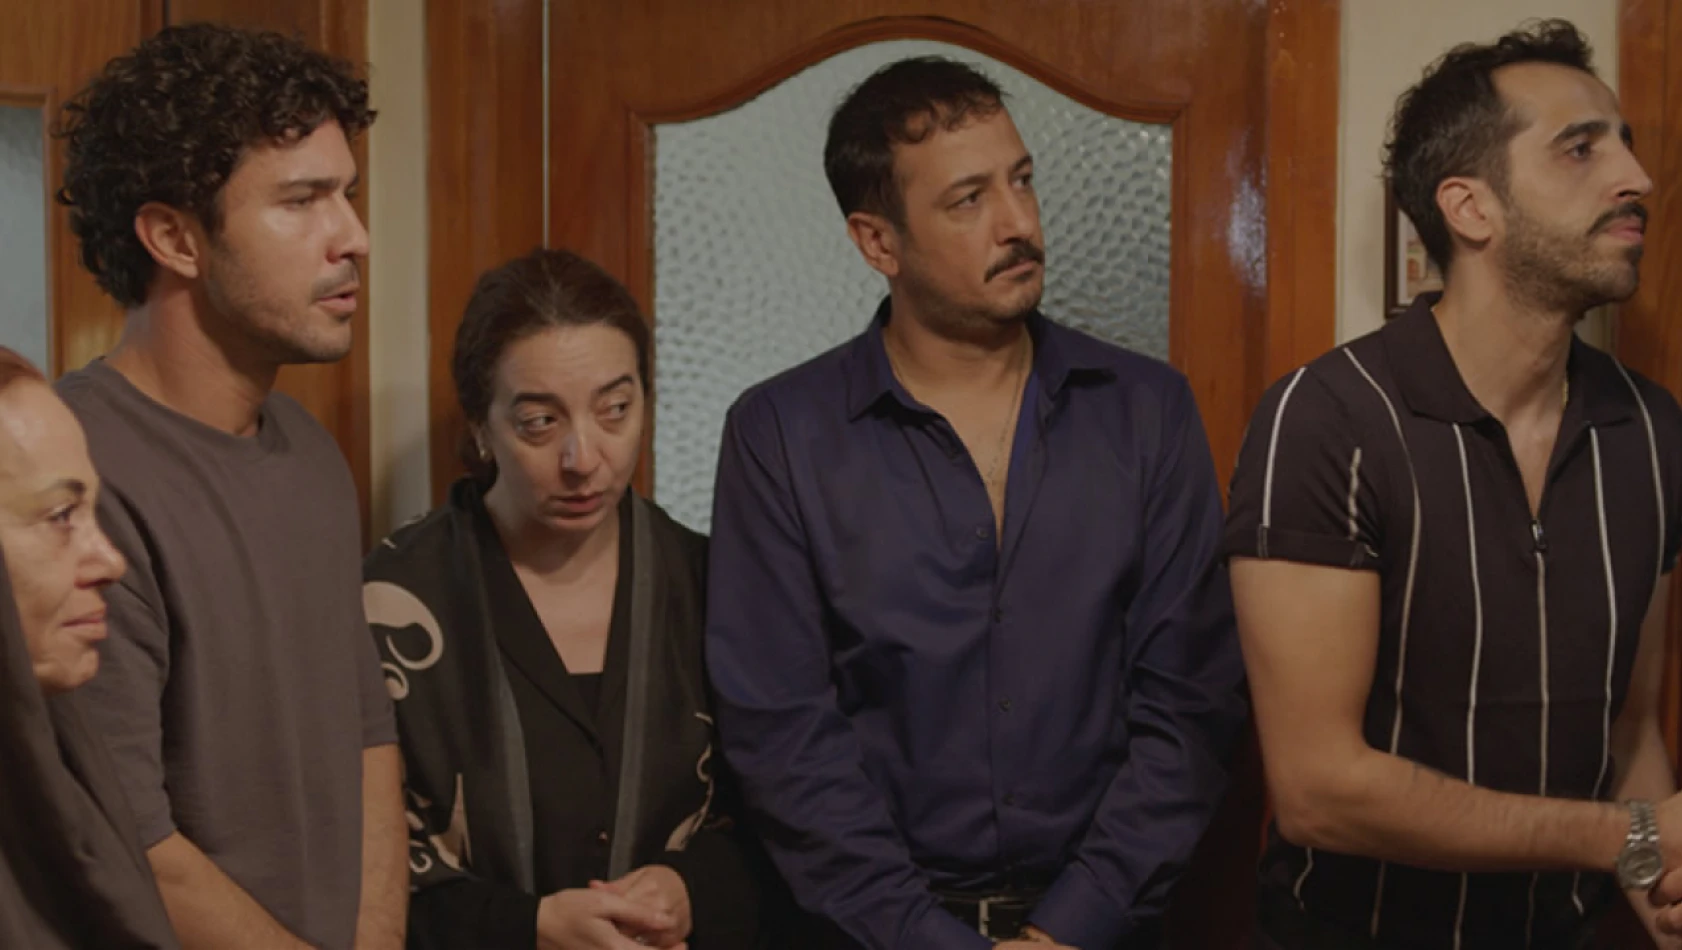 'İyi Bir Aile Değiliz' filminden fragman yayınlandı